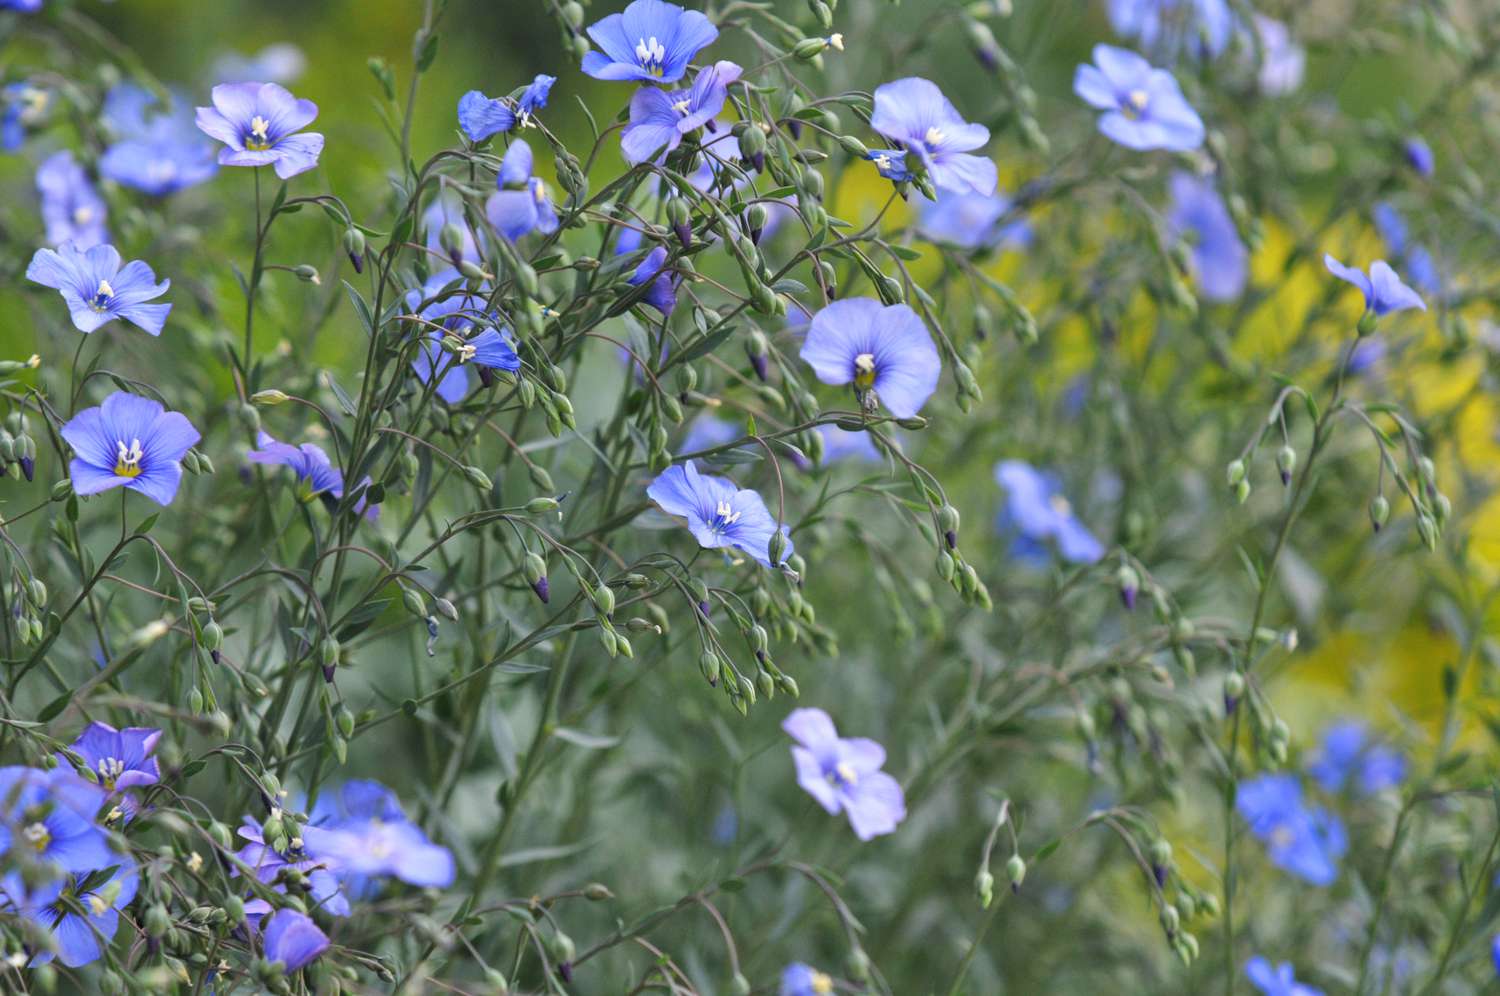 Flores de lino en tallos con capullos y pétalos azul claro